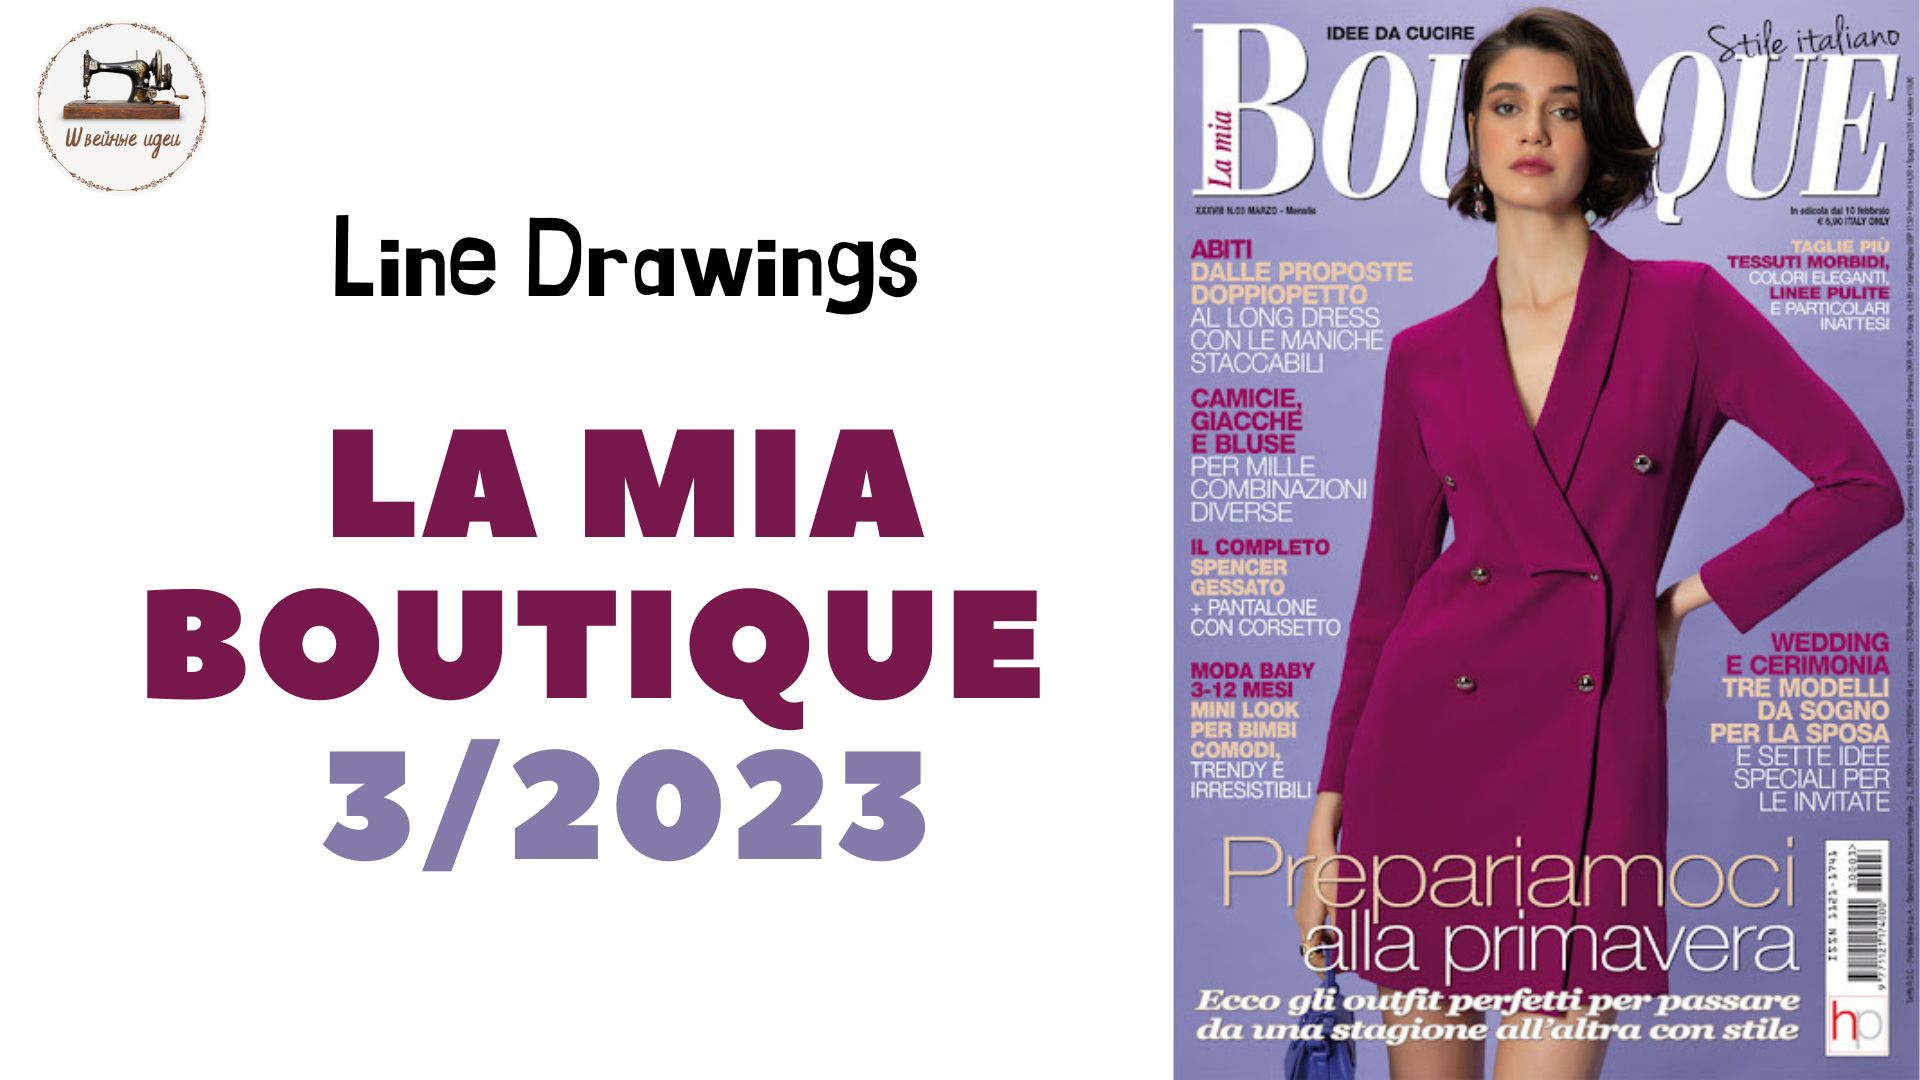 LA LA MIA BOUTIQUE 3/2023 Italy/ LINE DRAWINGS. Итальянский выпуск #boutiqueеtrends